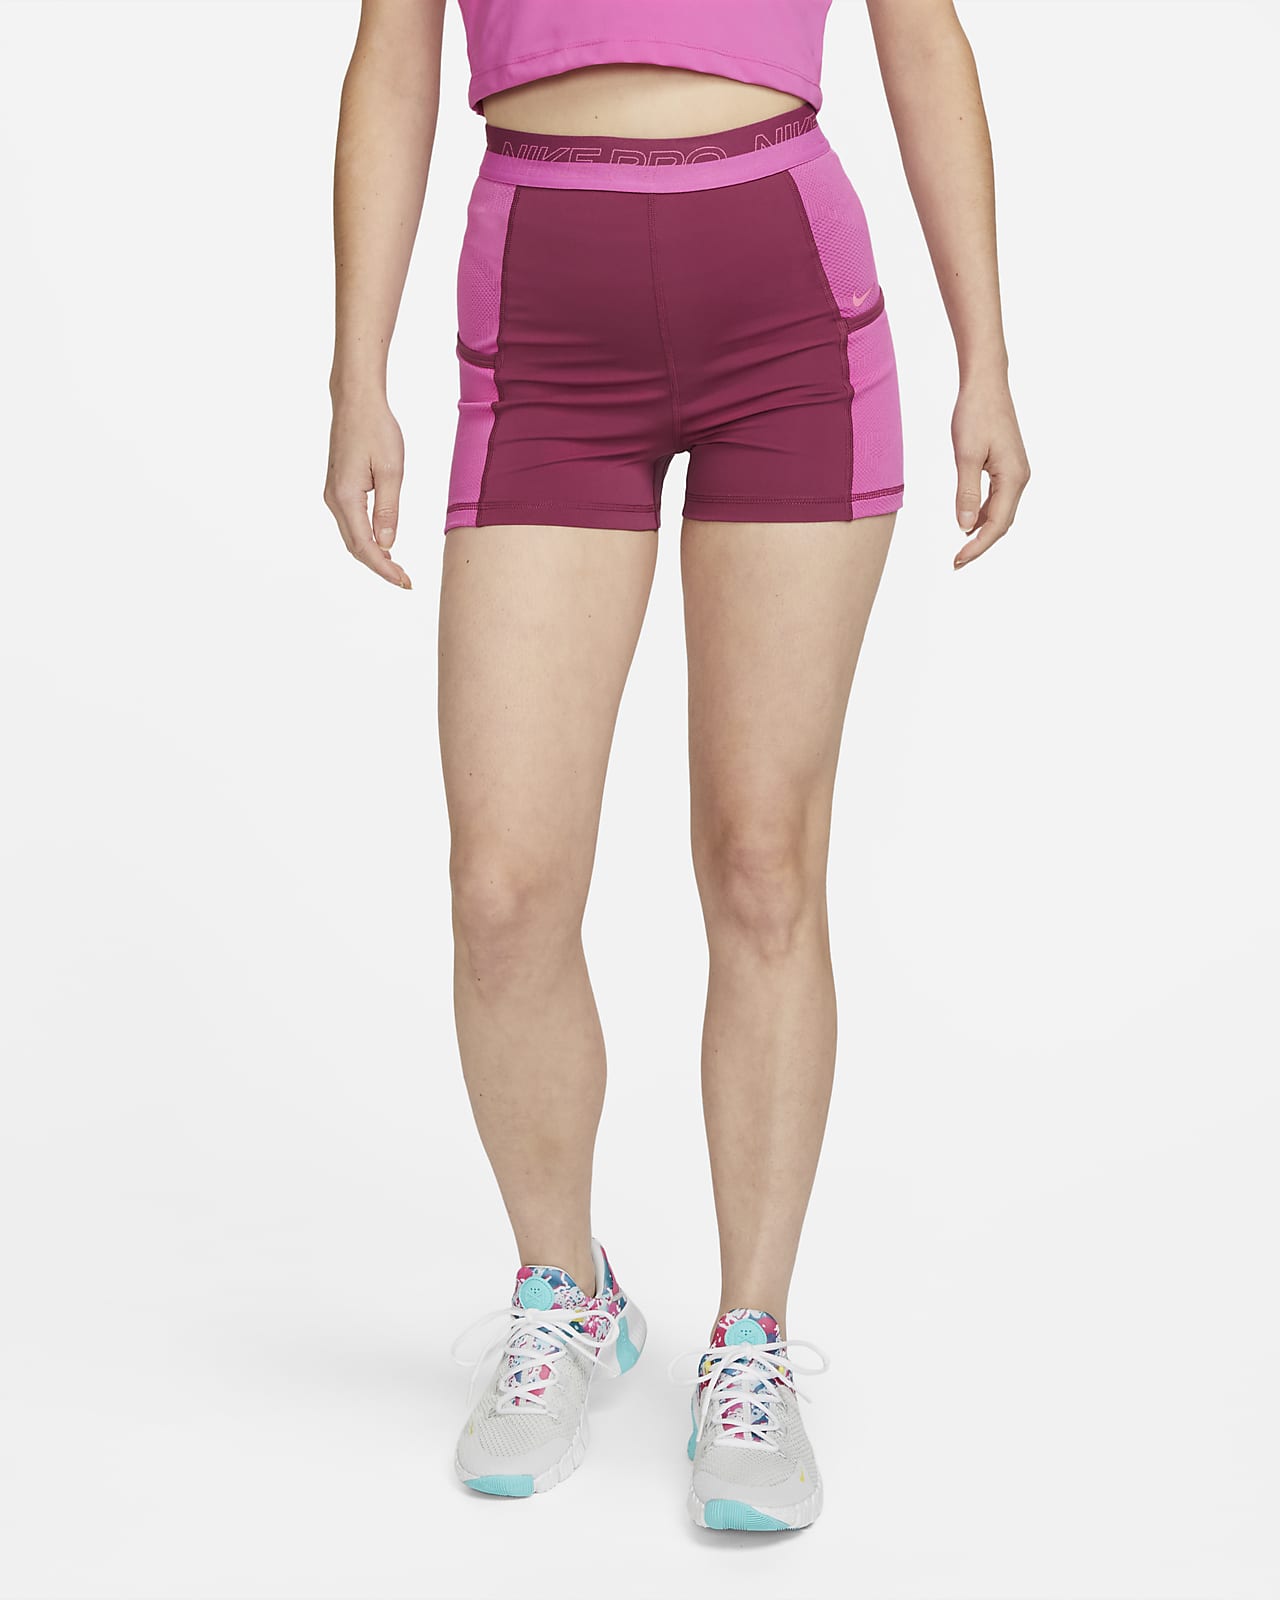 Training Shorts with Pockets. Nike 